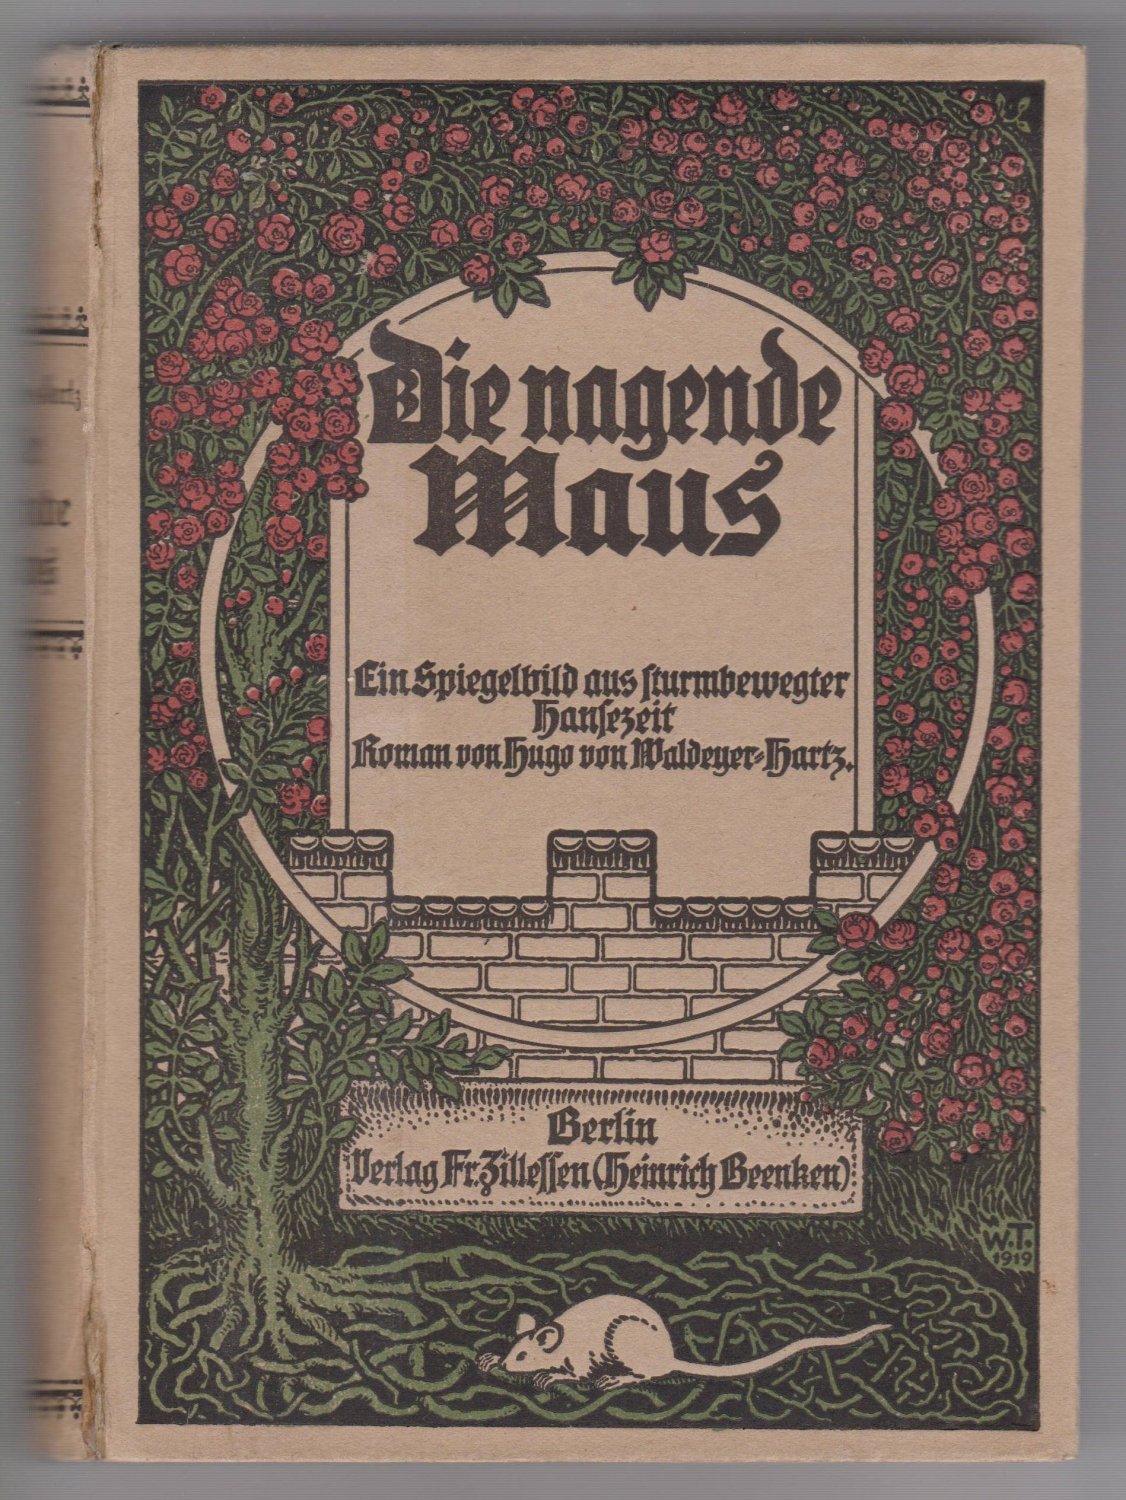 WALDEYER-HARTZ, Hugo von:  Die nagende Maus. Ein Spiegelbild aus sturmbewegter Hansezeit. Roman. 